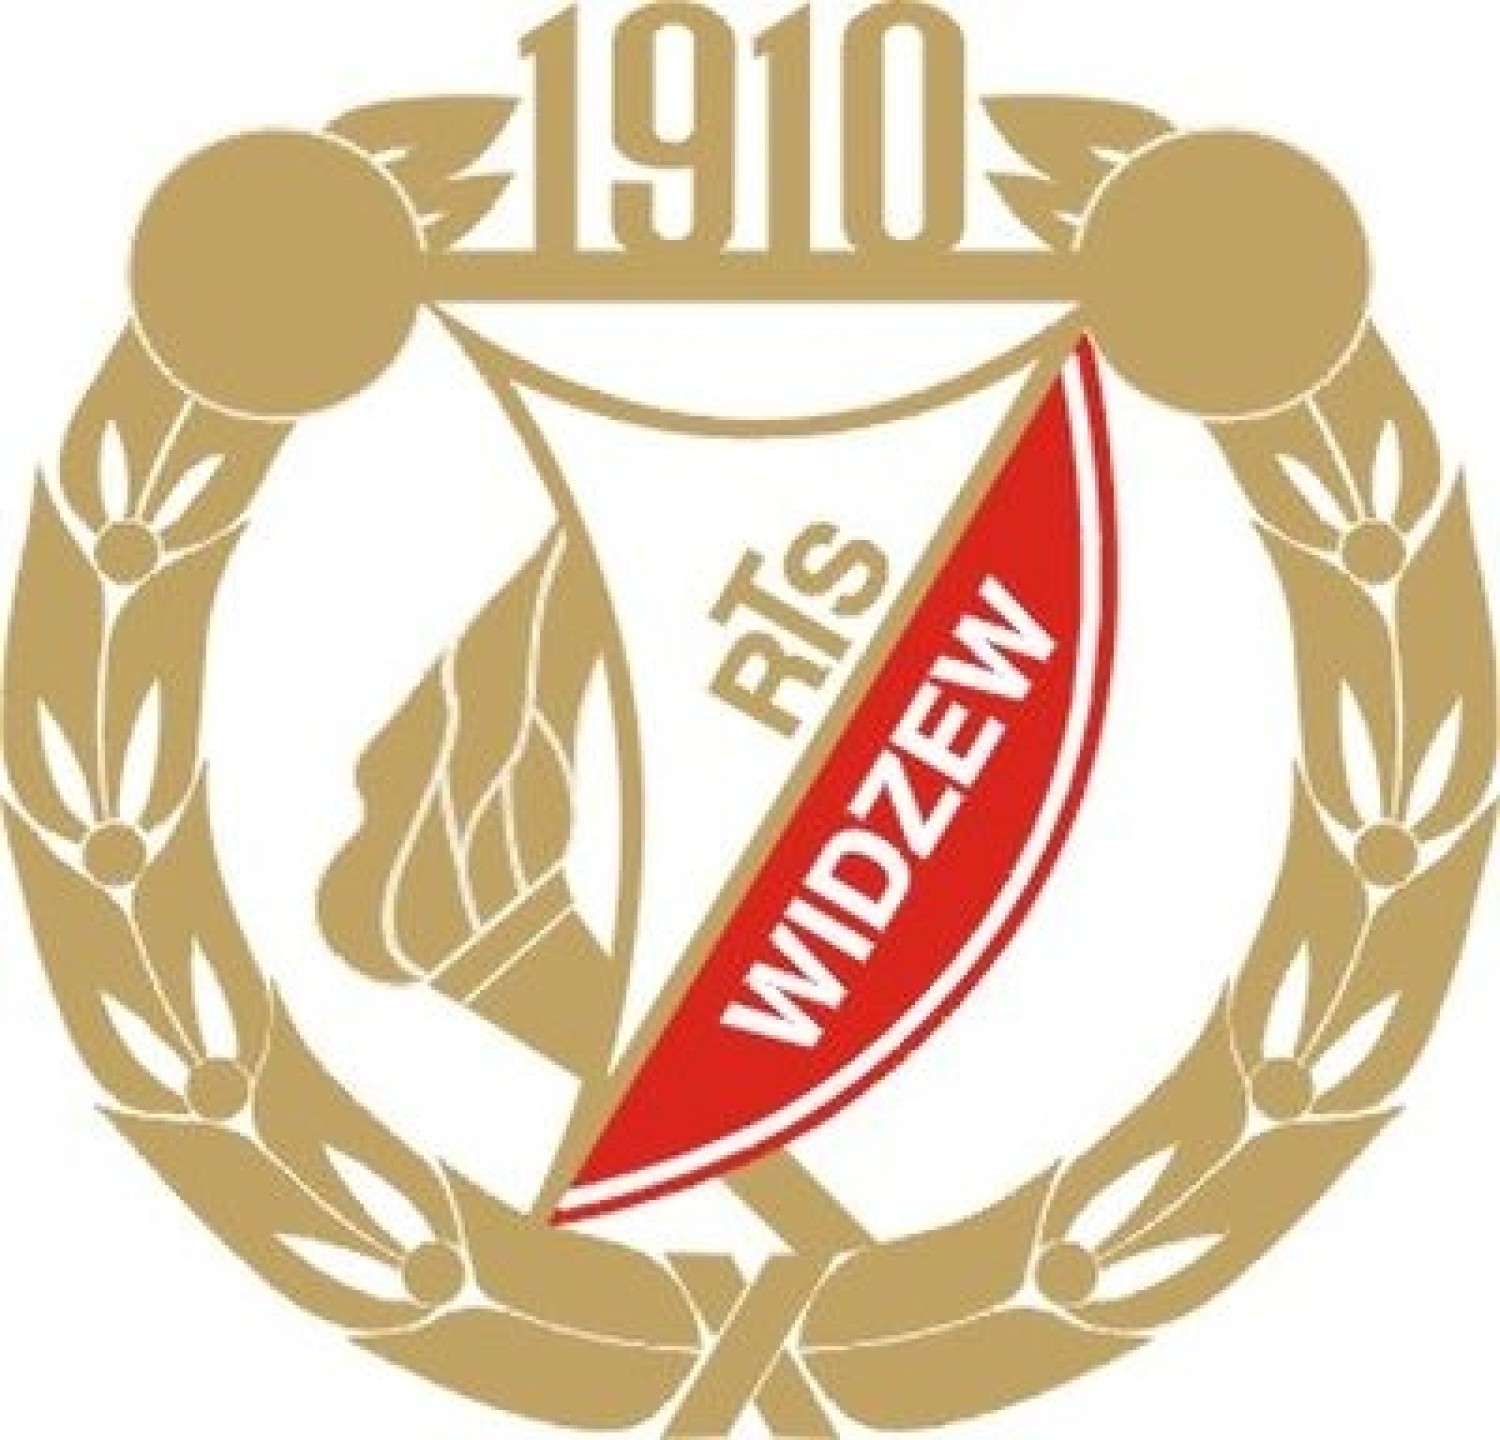 chojniczanka logo